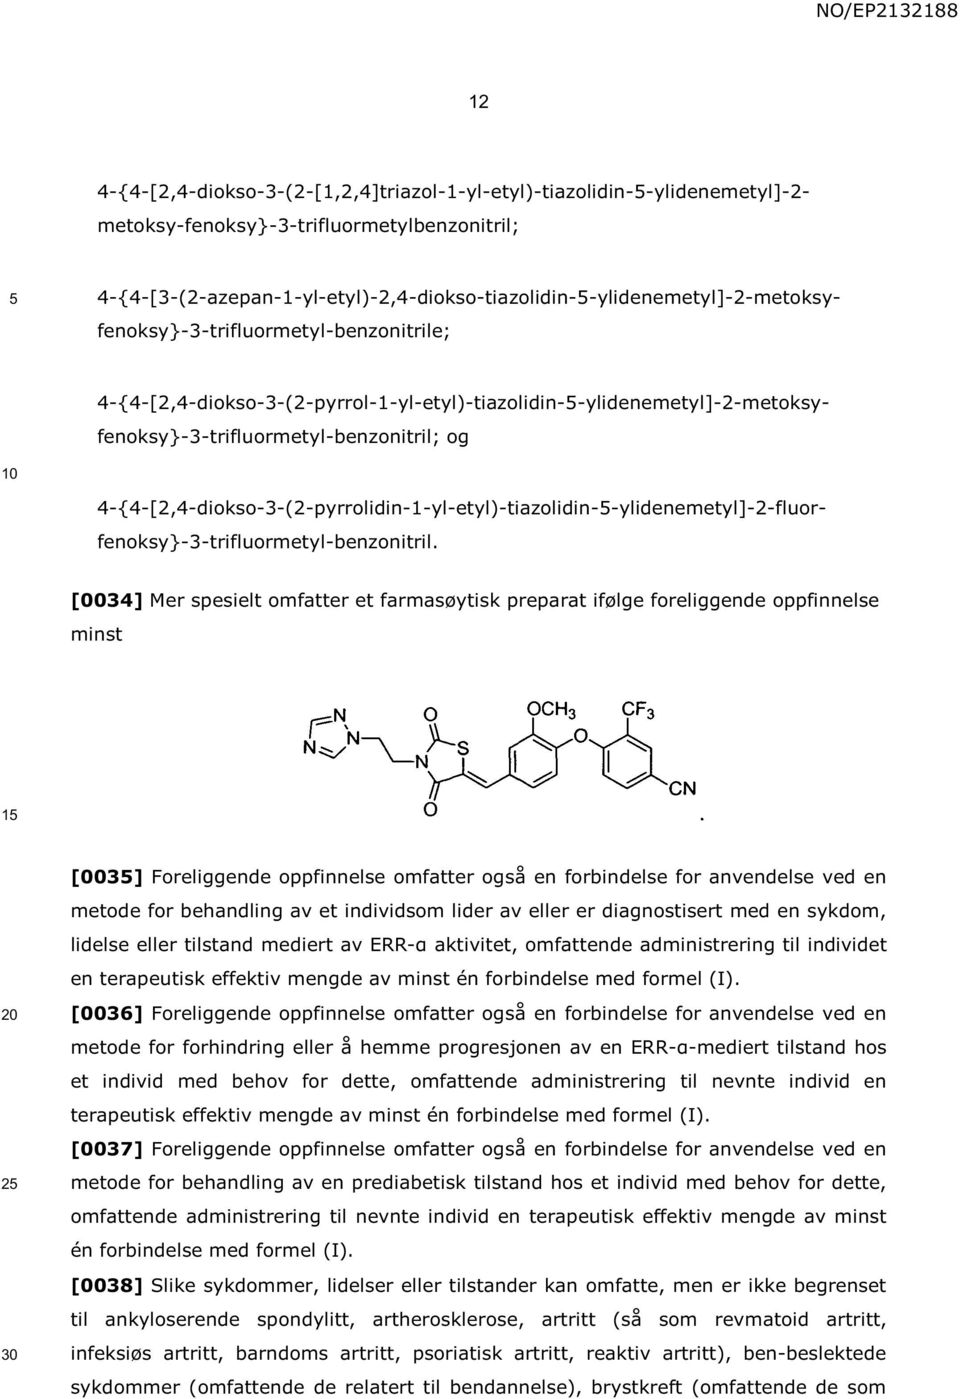 4-{4-[2,4-diokso-3-(2-pyrrol-1-yl-etyl)-tiazolidin--ylidenemetyl]-2-metoksyfenoksy}-3-trifluormetyl-benzonitril; og